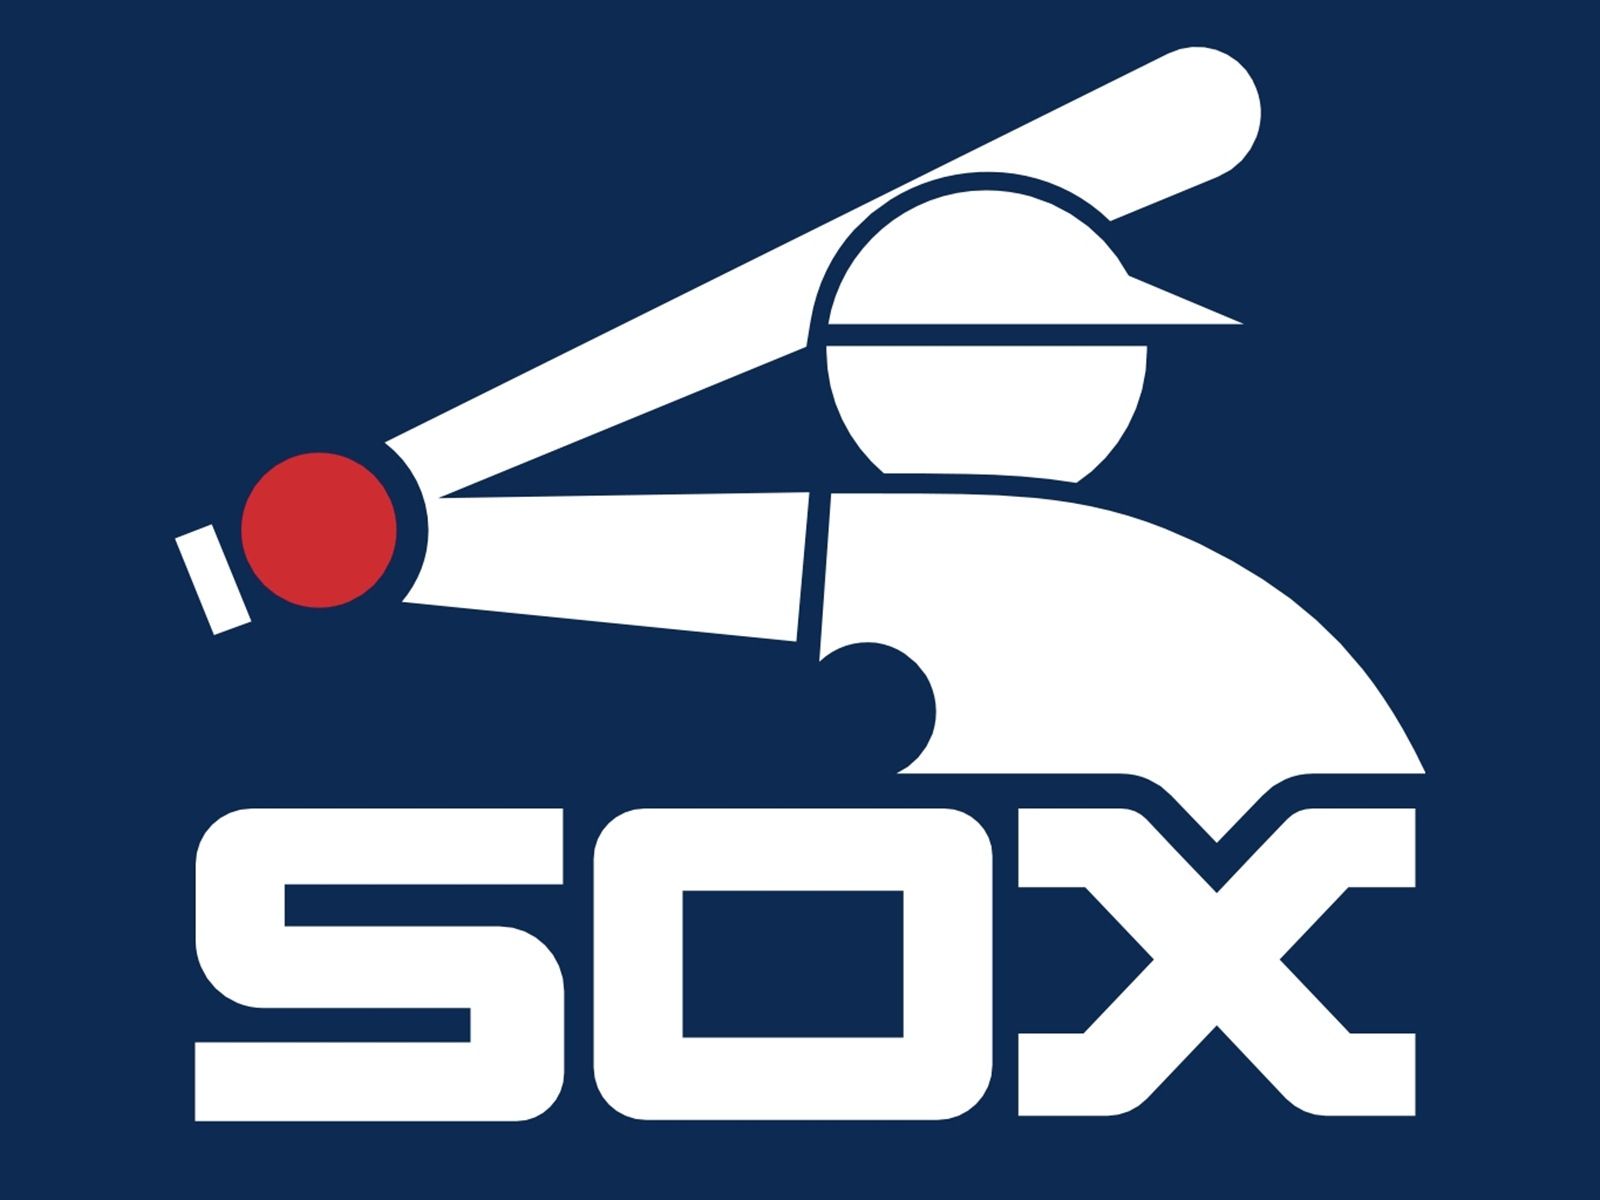 Embl White Sox - White Sox Retro Logo - 1766x1498 PNG Download